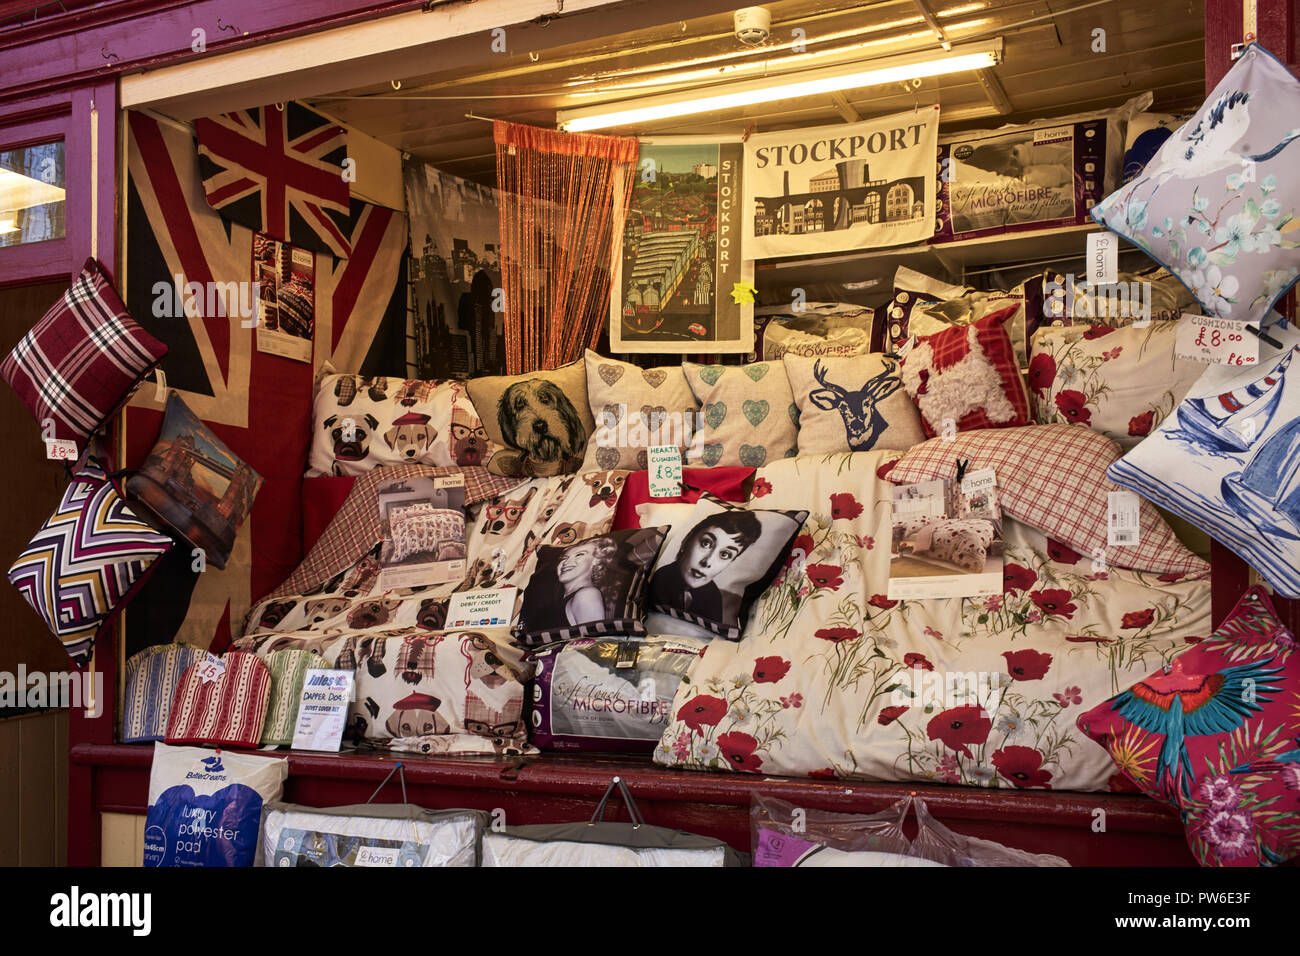 Ein Stall verkaufen Kissen und Handtücher am Marktstand in Stockport Stockfoto